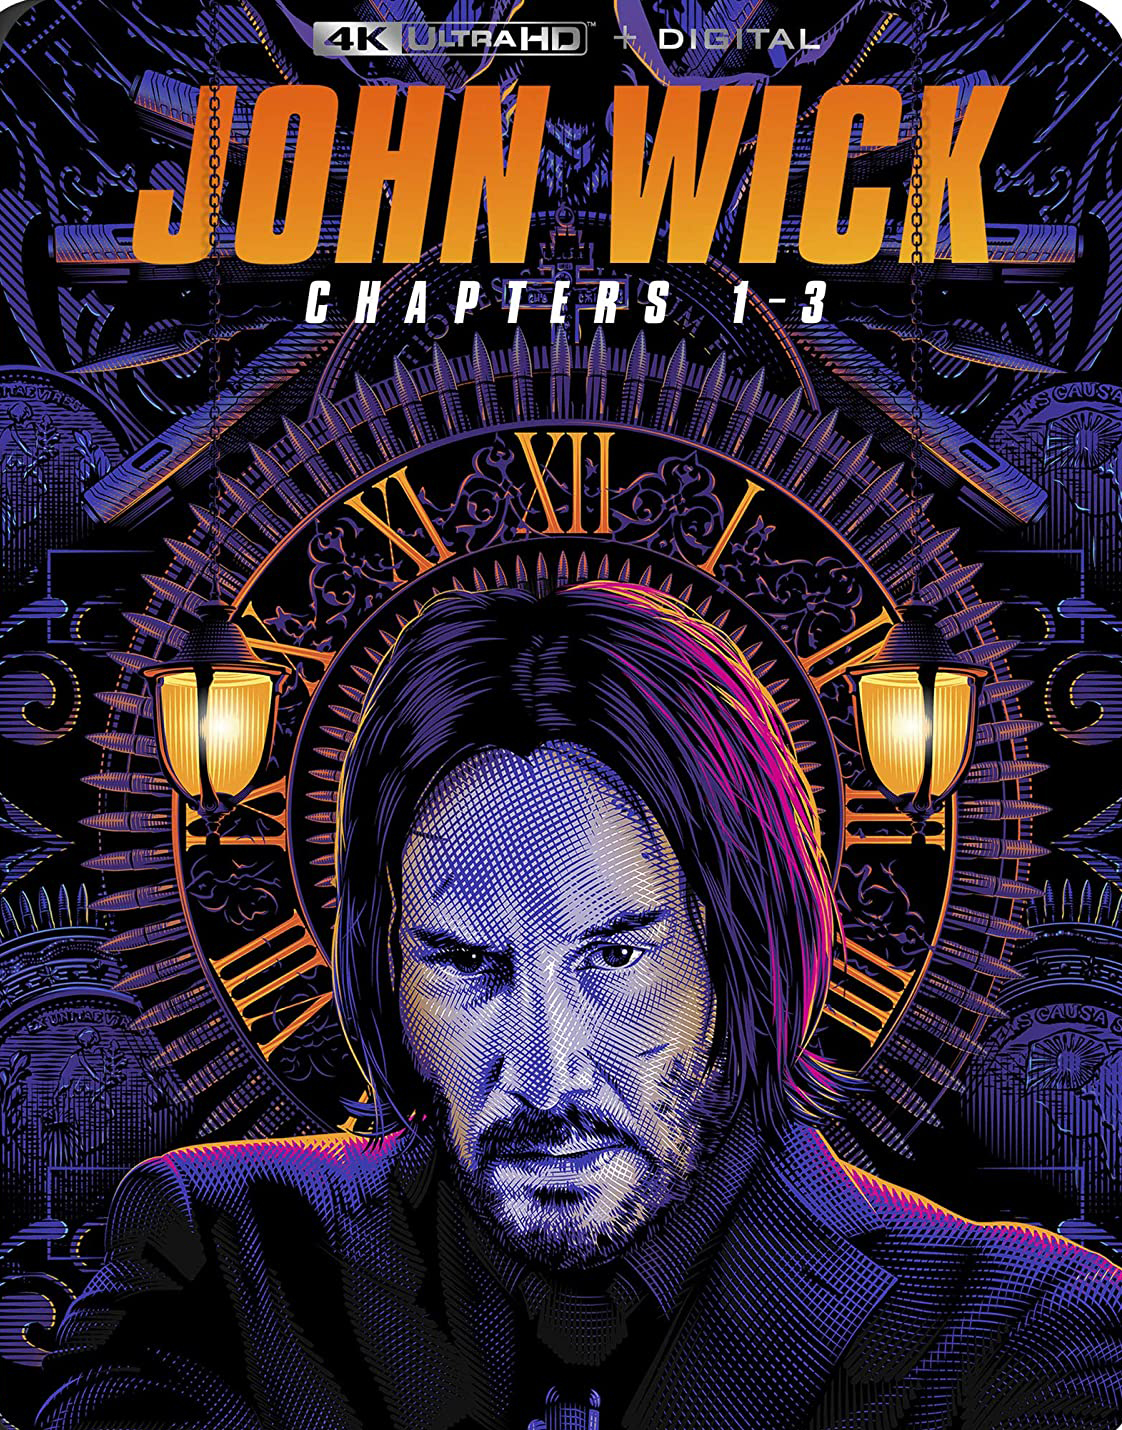 John Wick Chapters 1 3 Includes Digital Copy 4k Ultra Hd Blu Ray Best Buy